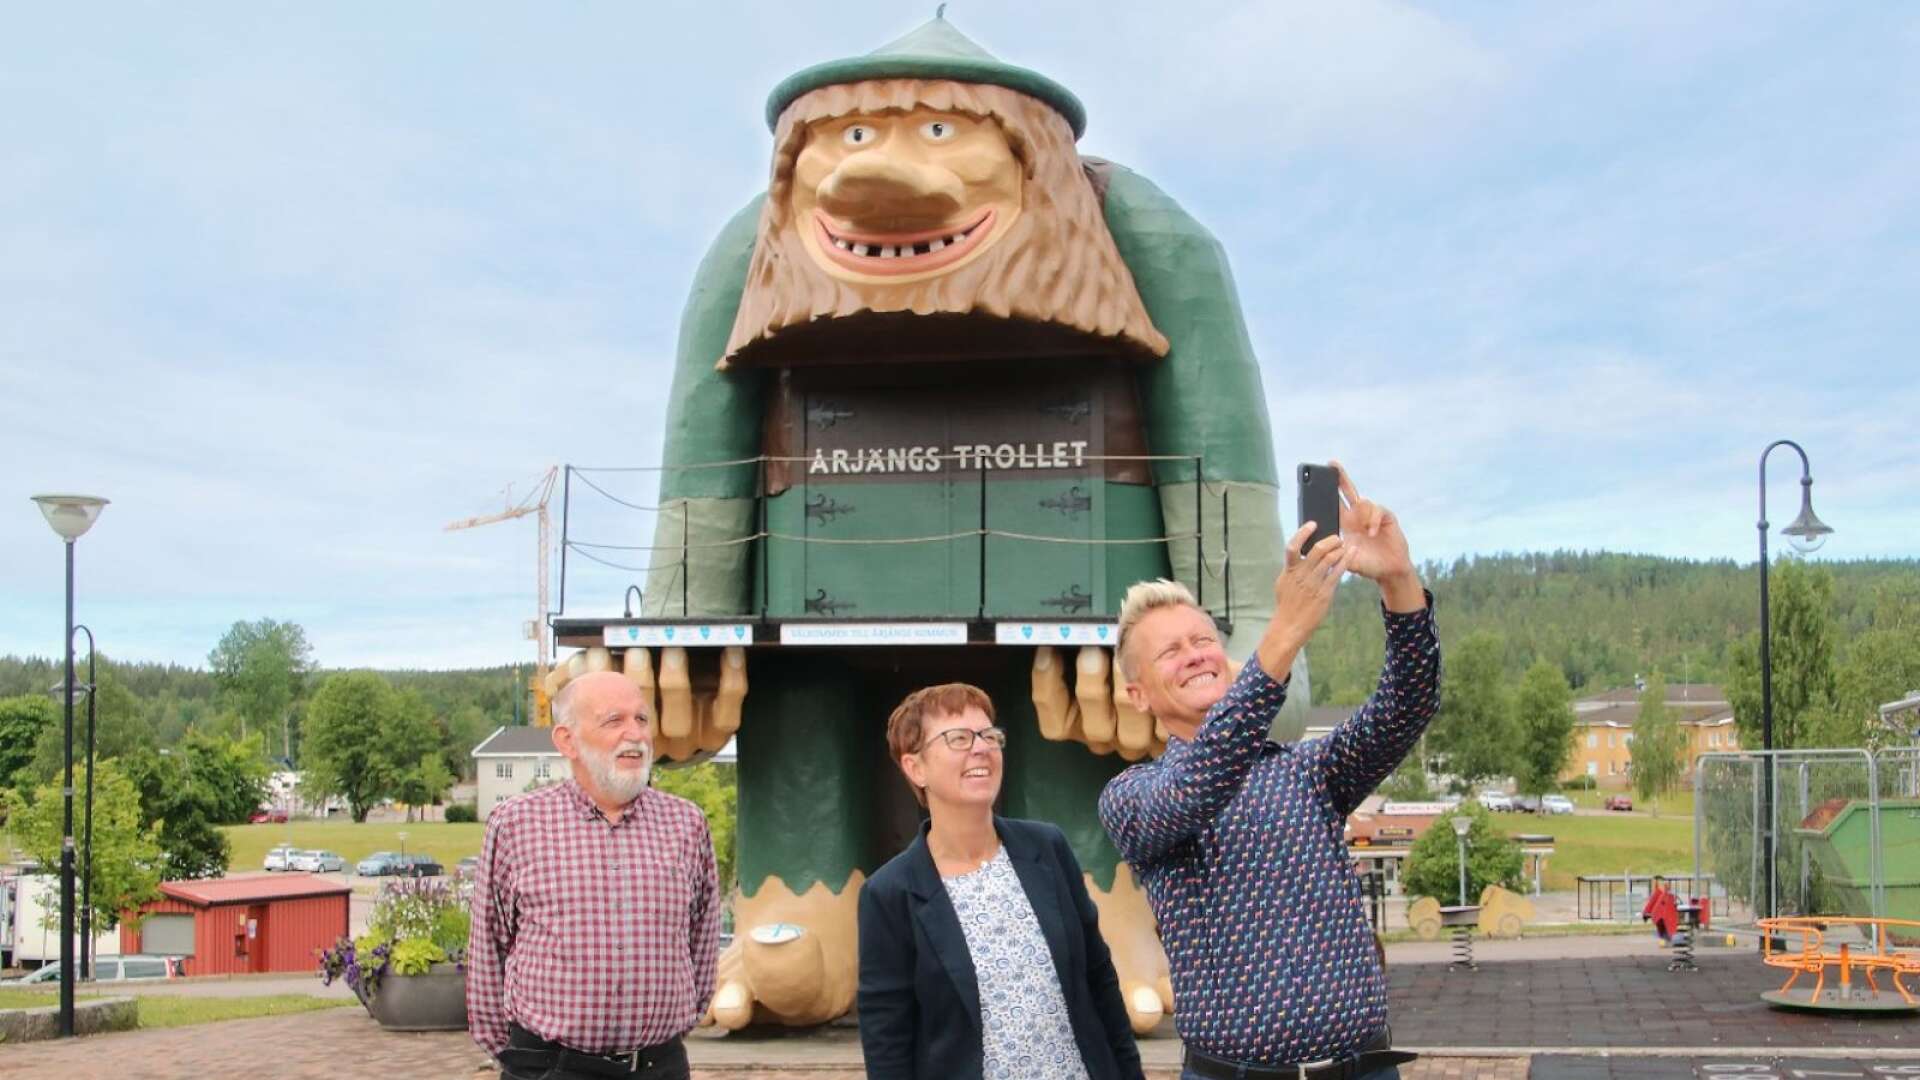 Den styrande majoriteten i Årjäng passade också på att ta en selfie. Här ses Lennart Bryntesson (MP), Anette Eriksson (C) och Daniel Schützer (S) tillsammans med trollet.